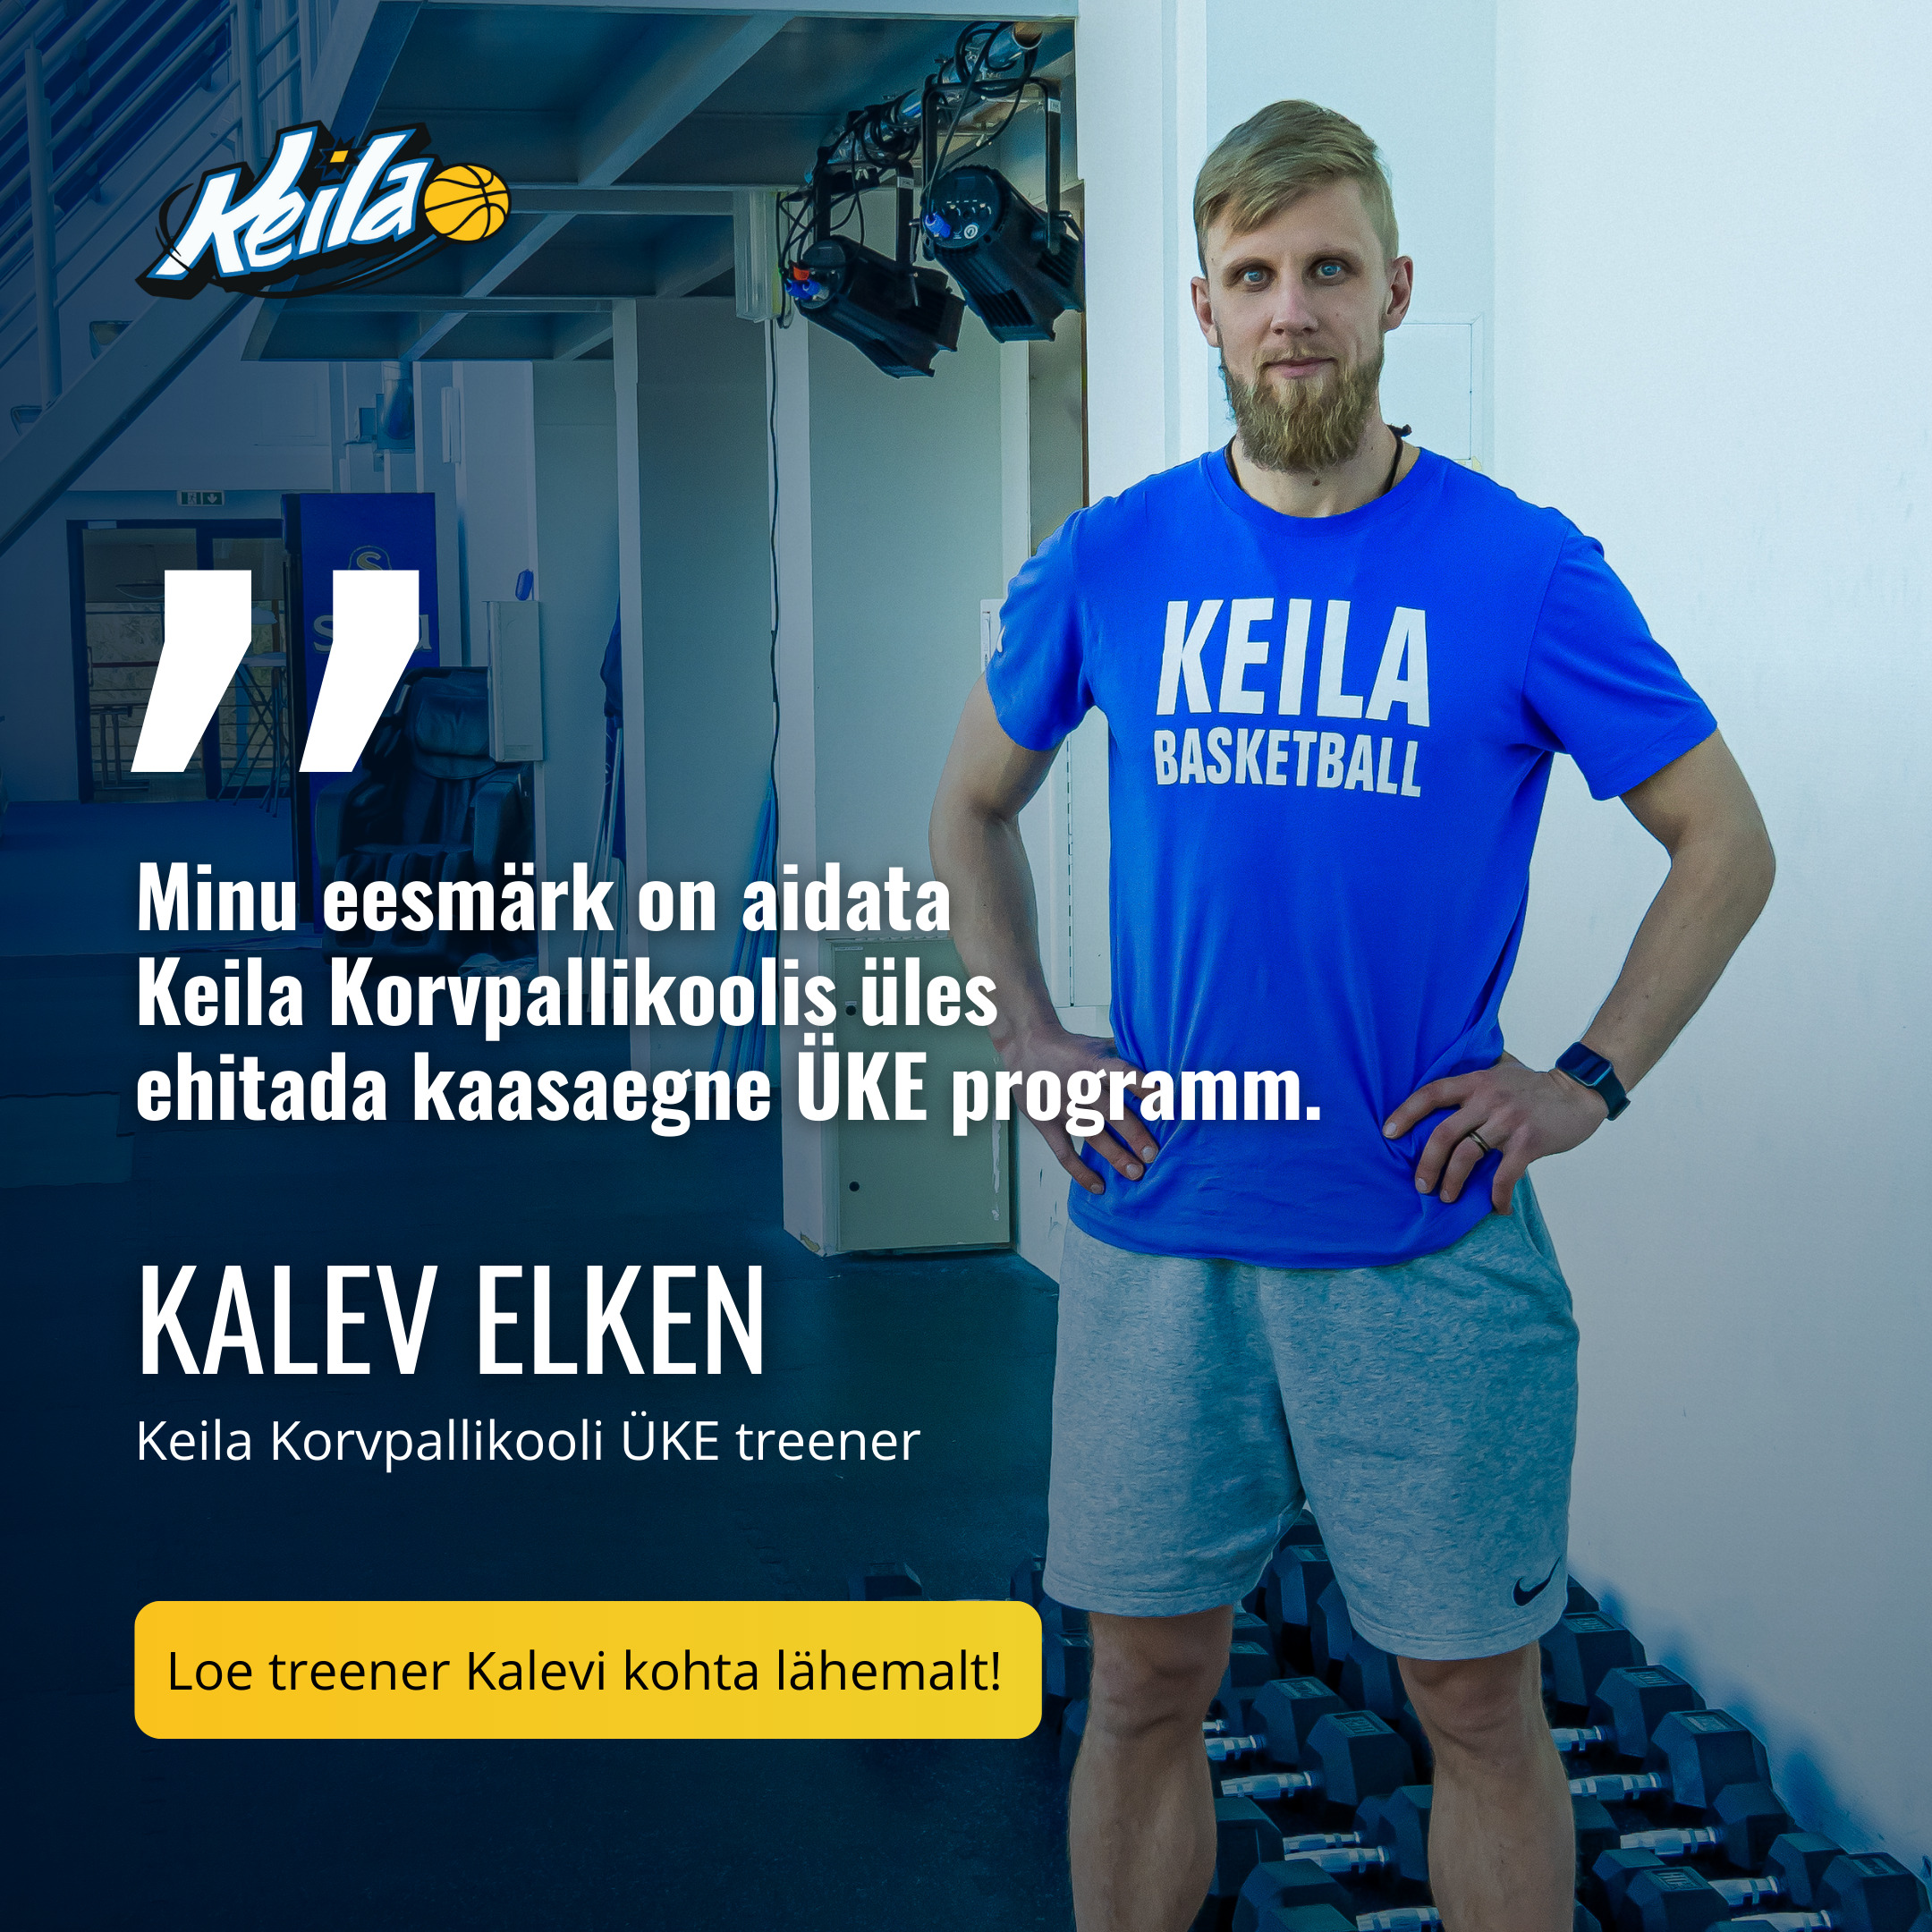 Keila Korvpallikooli ÜKE treener Kalev Elken on oma elus palju reisinud Uus-Meremaast Kanadani ja mõnda aega ka välismaal elanud, mistõttu on ta kogunud palju t